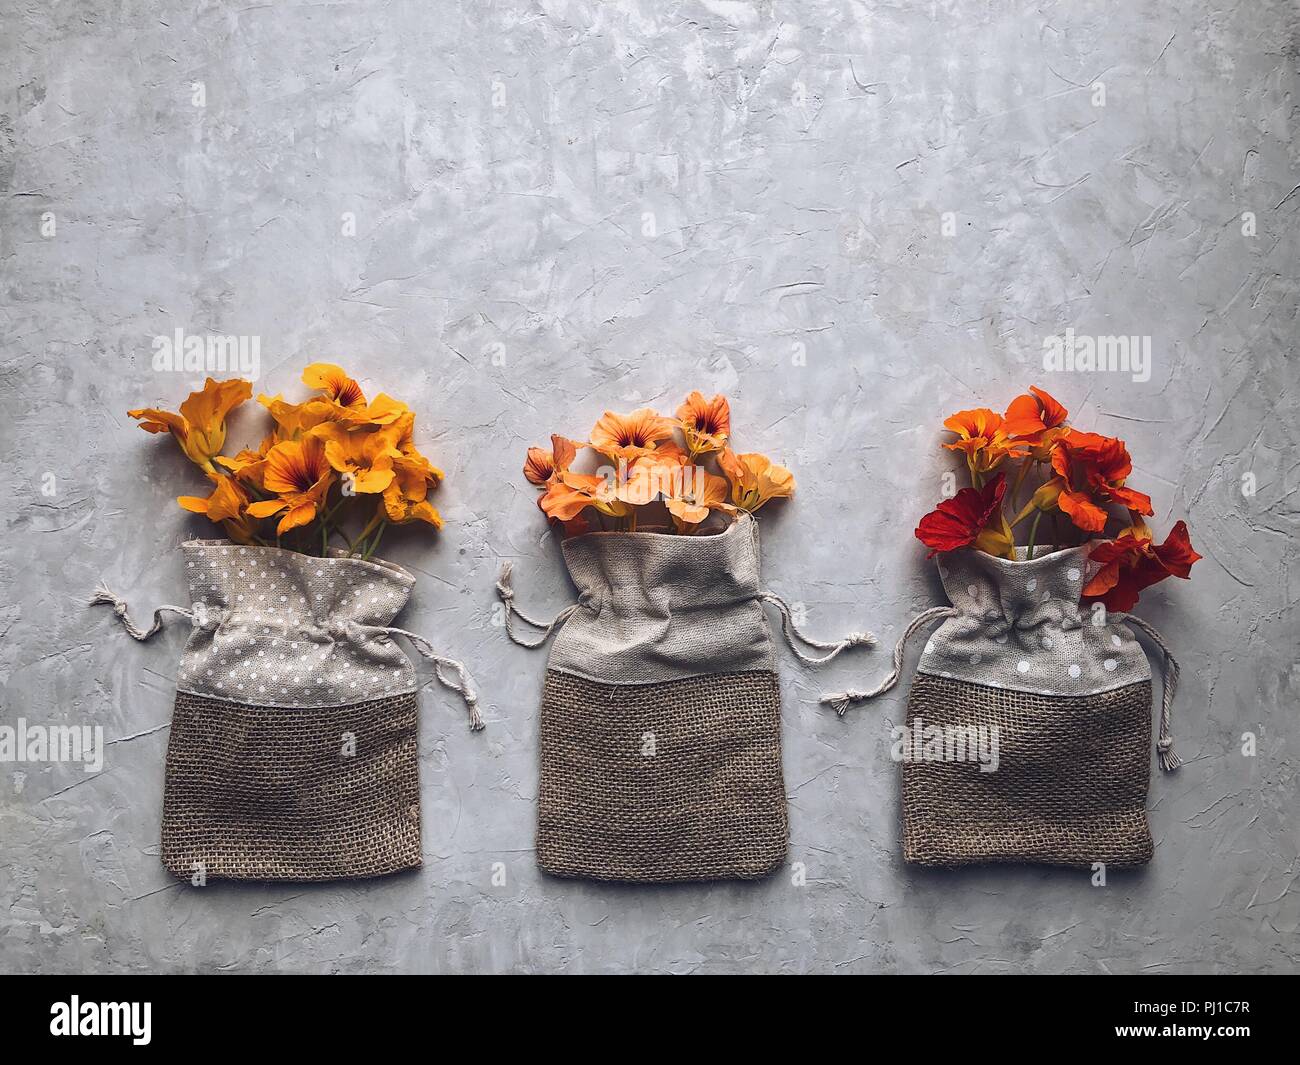 Kapuzinerkresse Blumen in drei hessischen Taschen Stockfoto